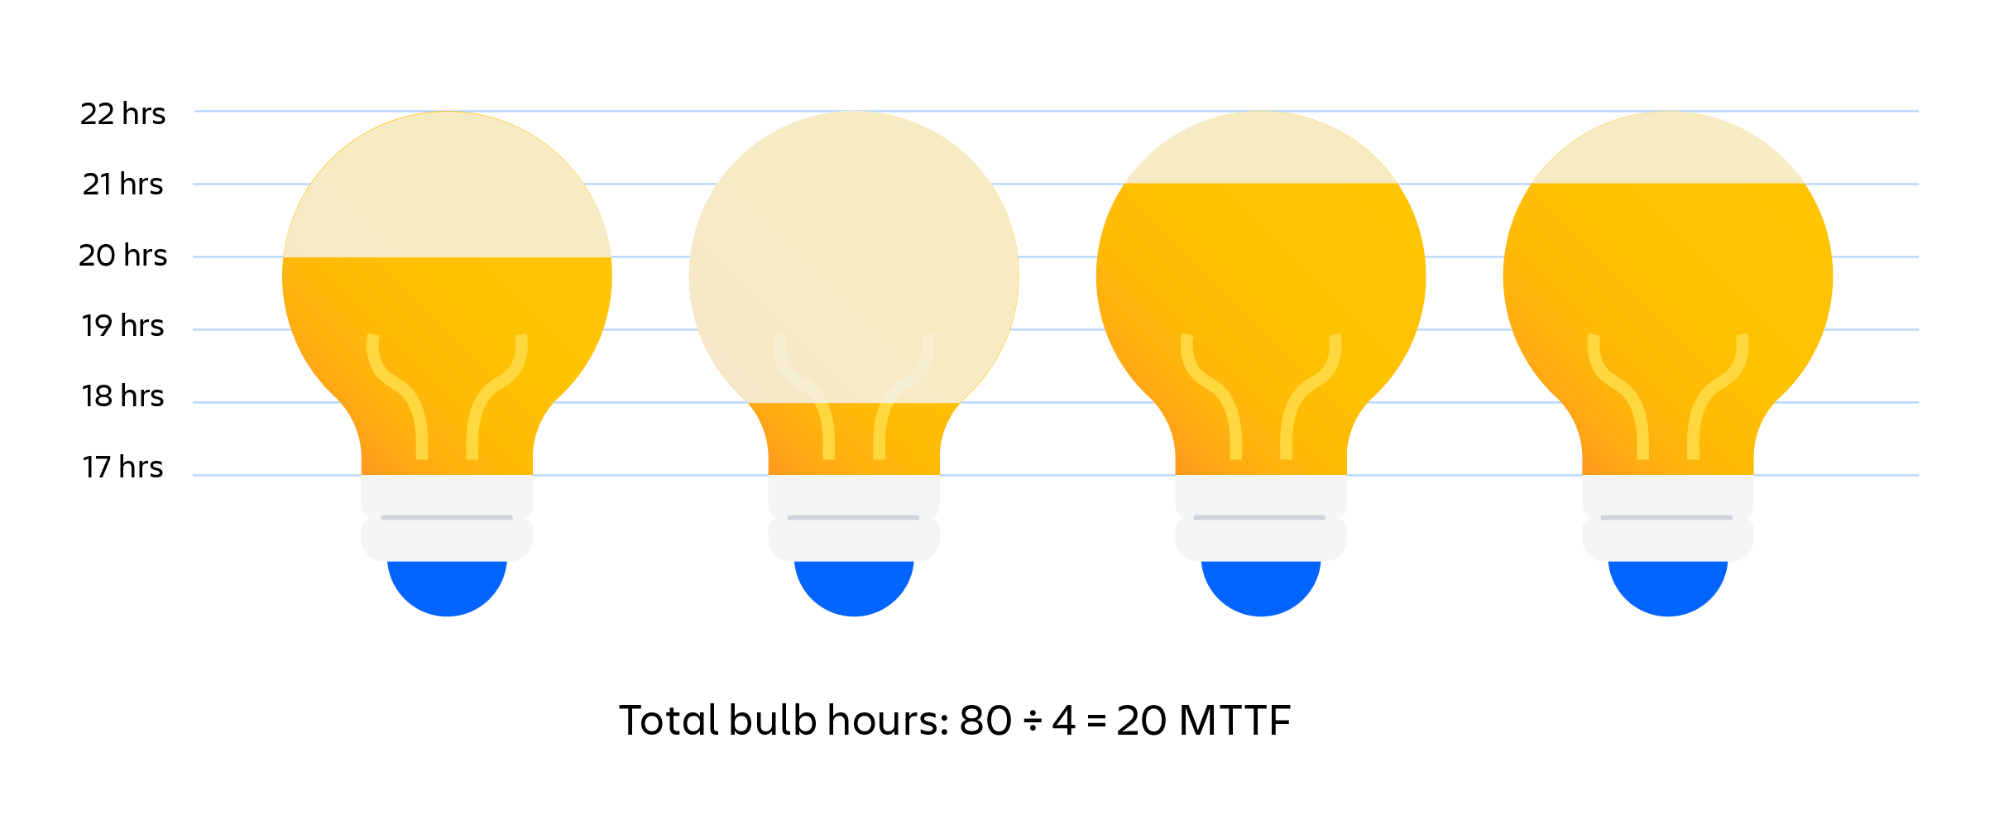 Exemple visuel de détermination du temps moyen de bon fonctionnement (MTTF) des ampoules. Le nombre total d'heures de fonctionnement des ampoules divisé par le nombre d'ampoules est égal au MTTF